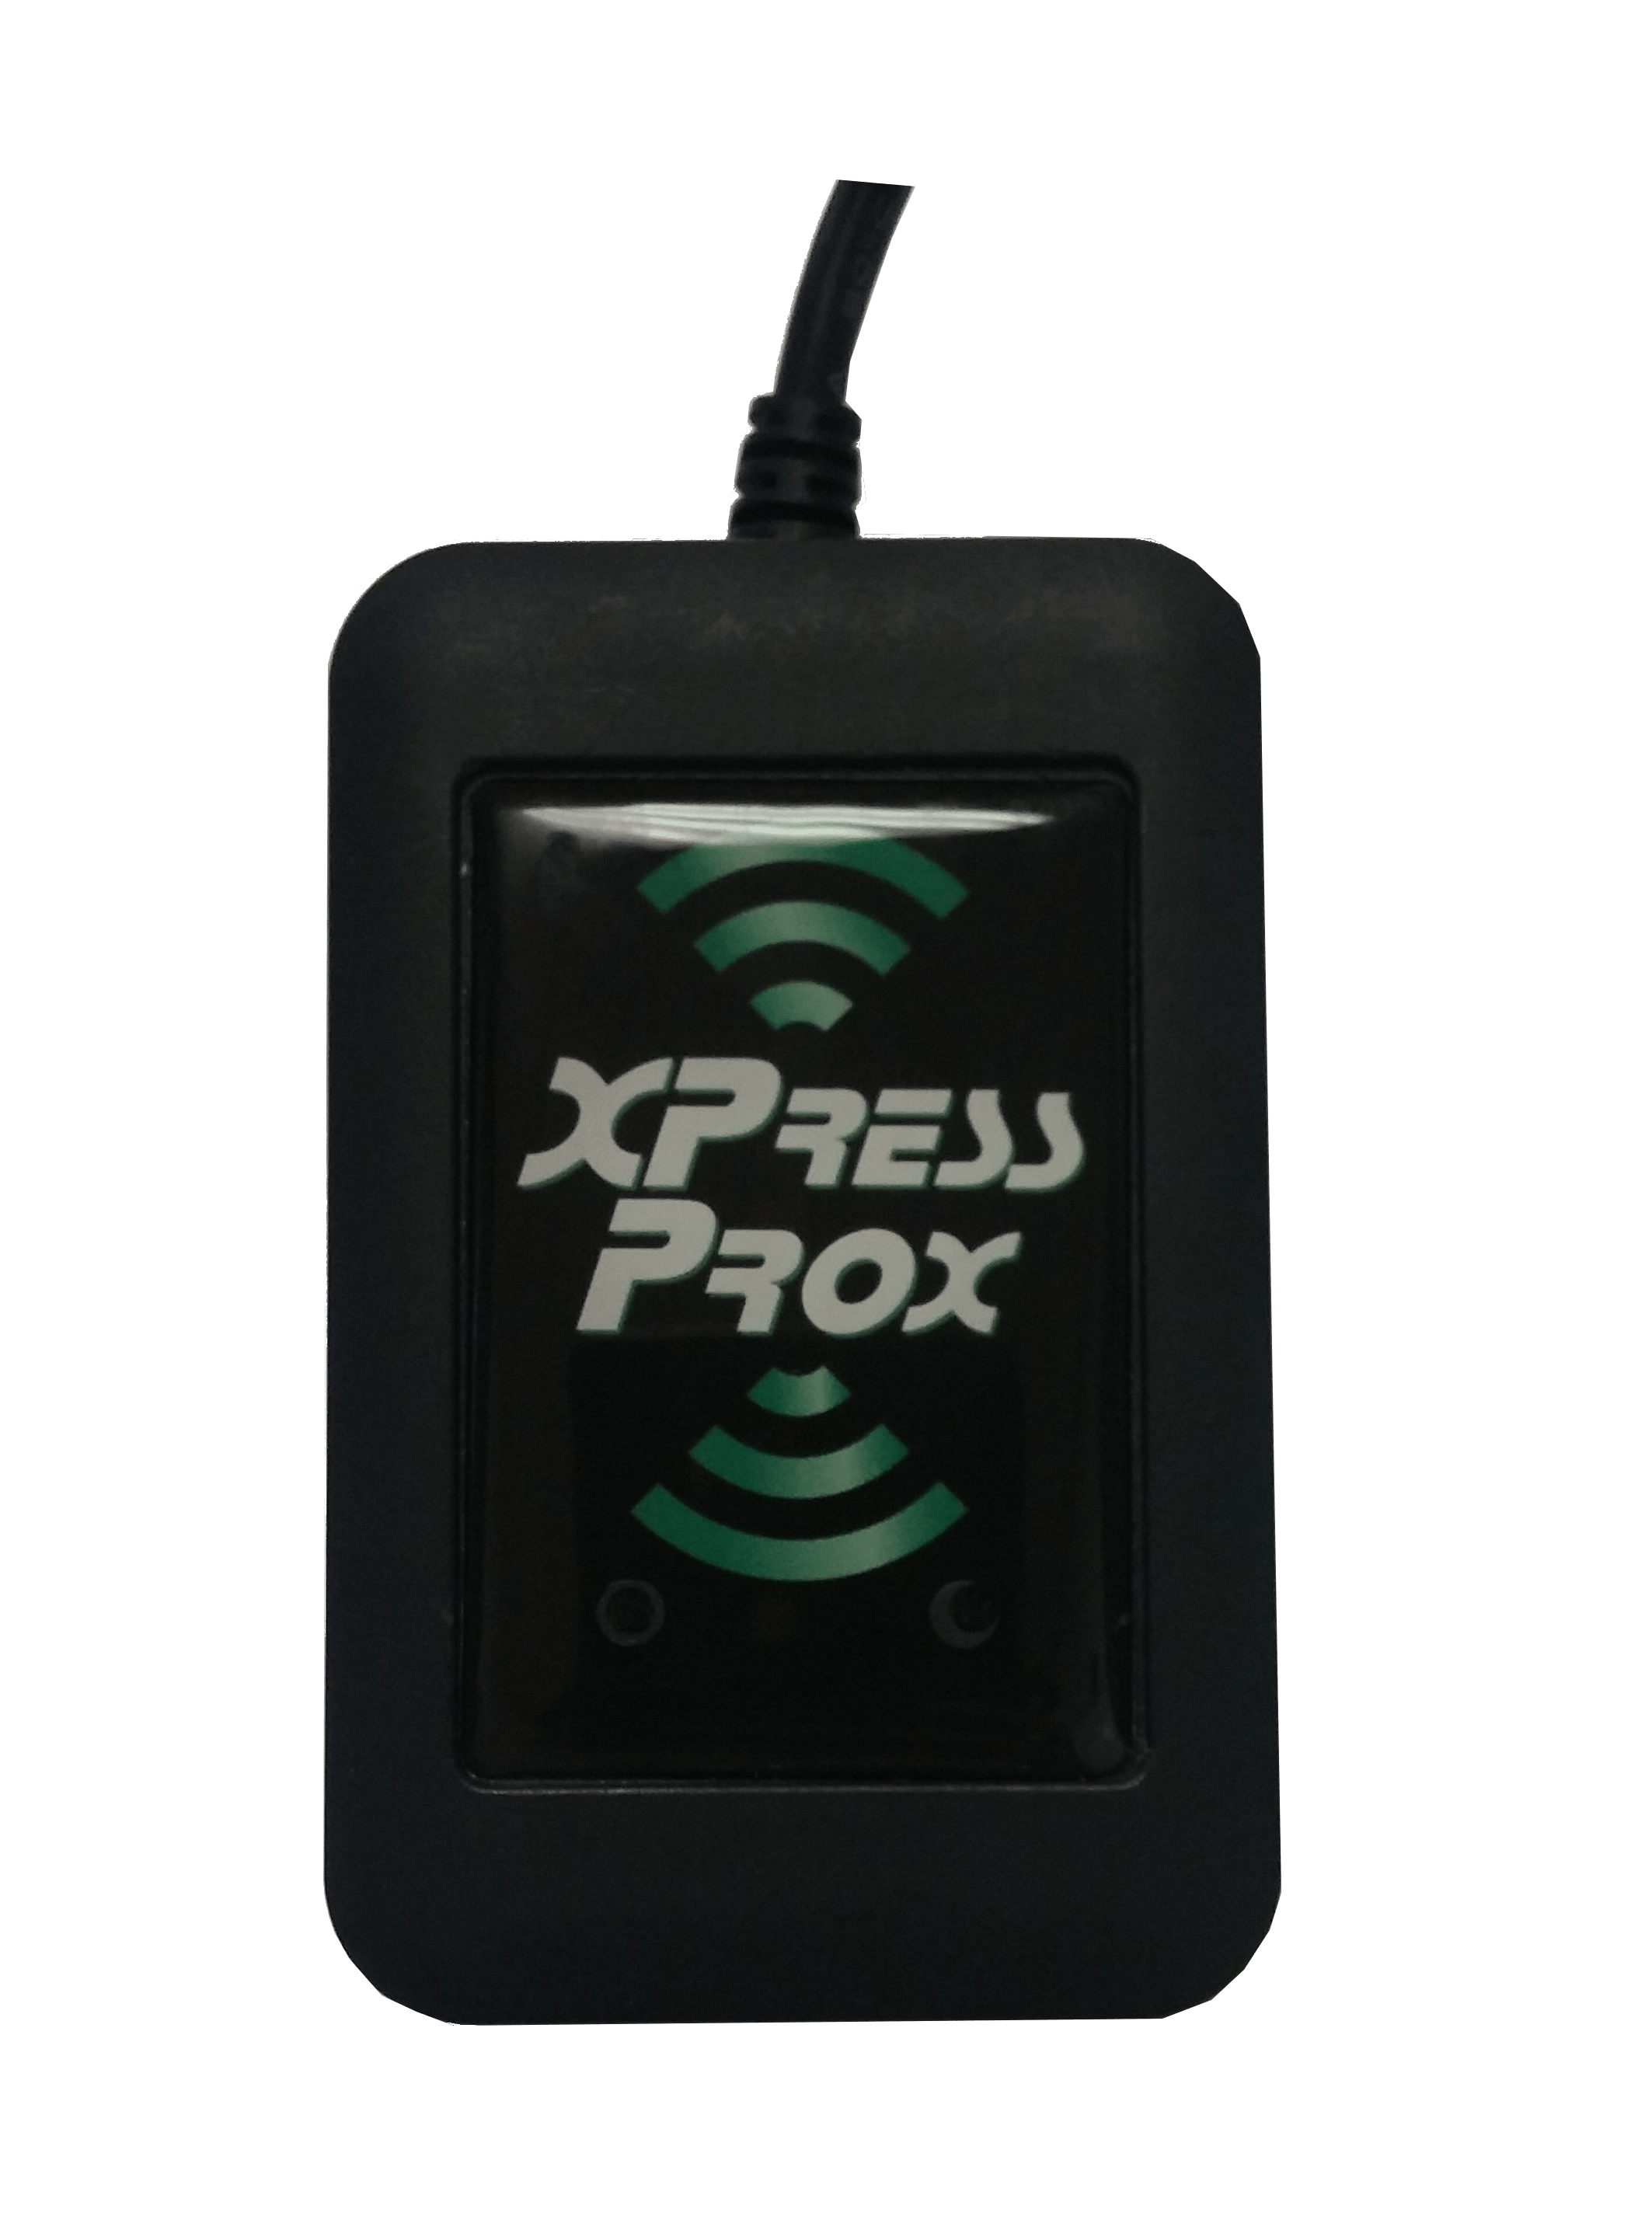 Trình đọc huy hiệu USB dành cho máy tính để bàn XPressProx